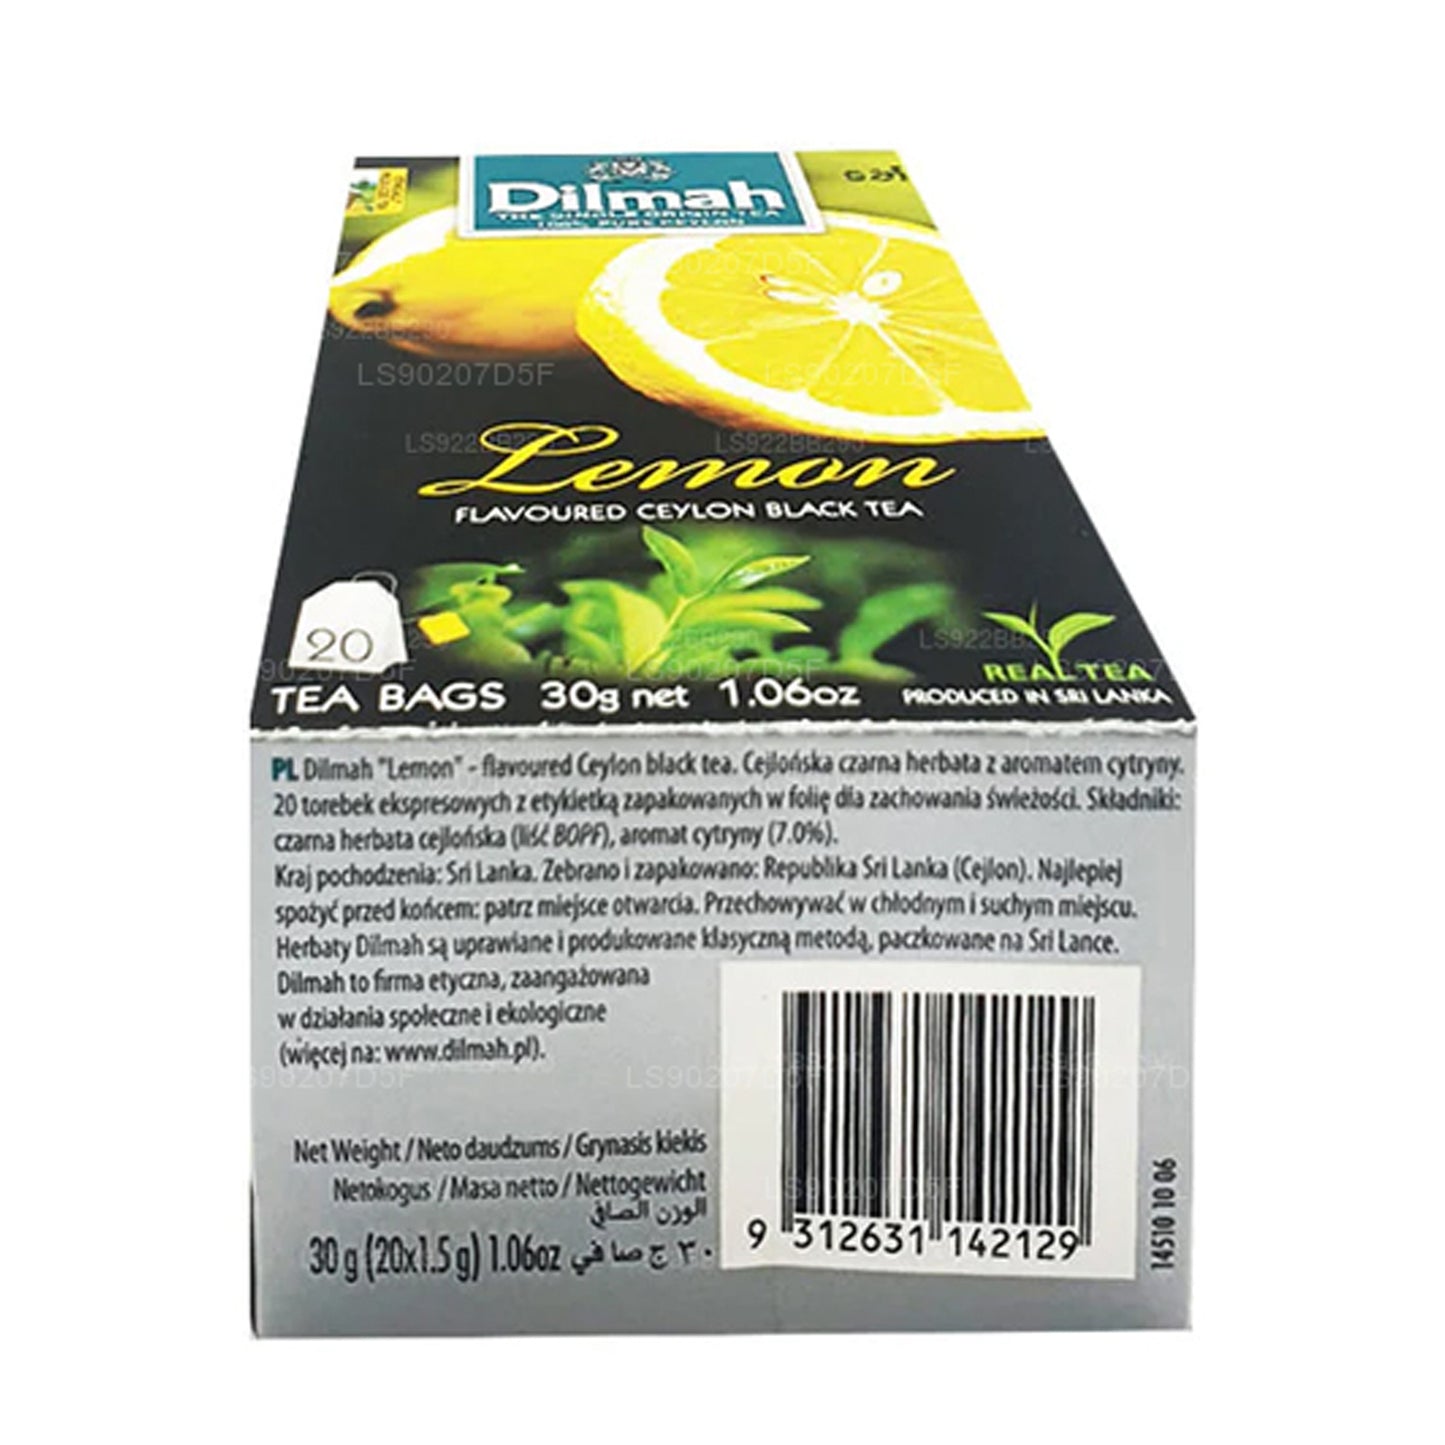 Dilmah thee met citroensmaak (30 g) 20 theezakjes